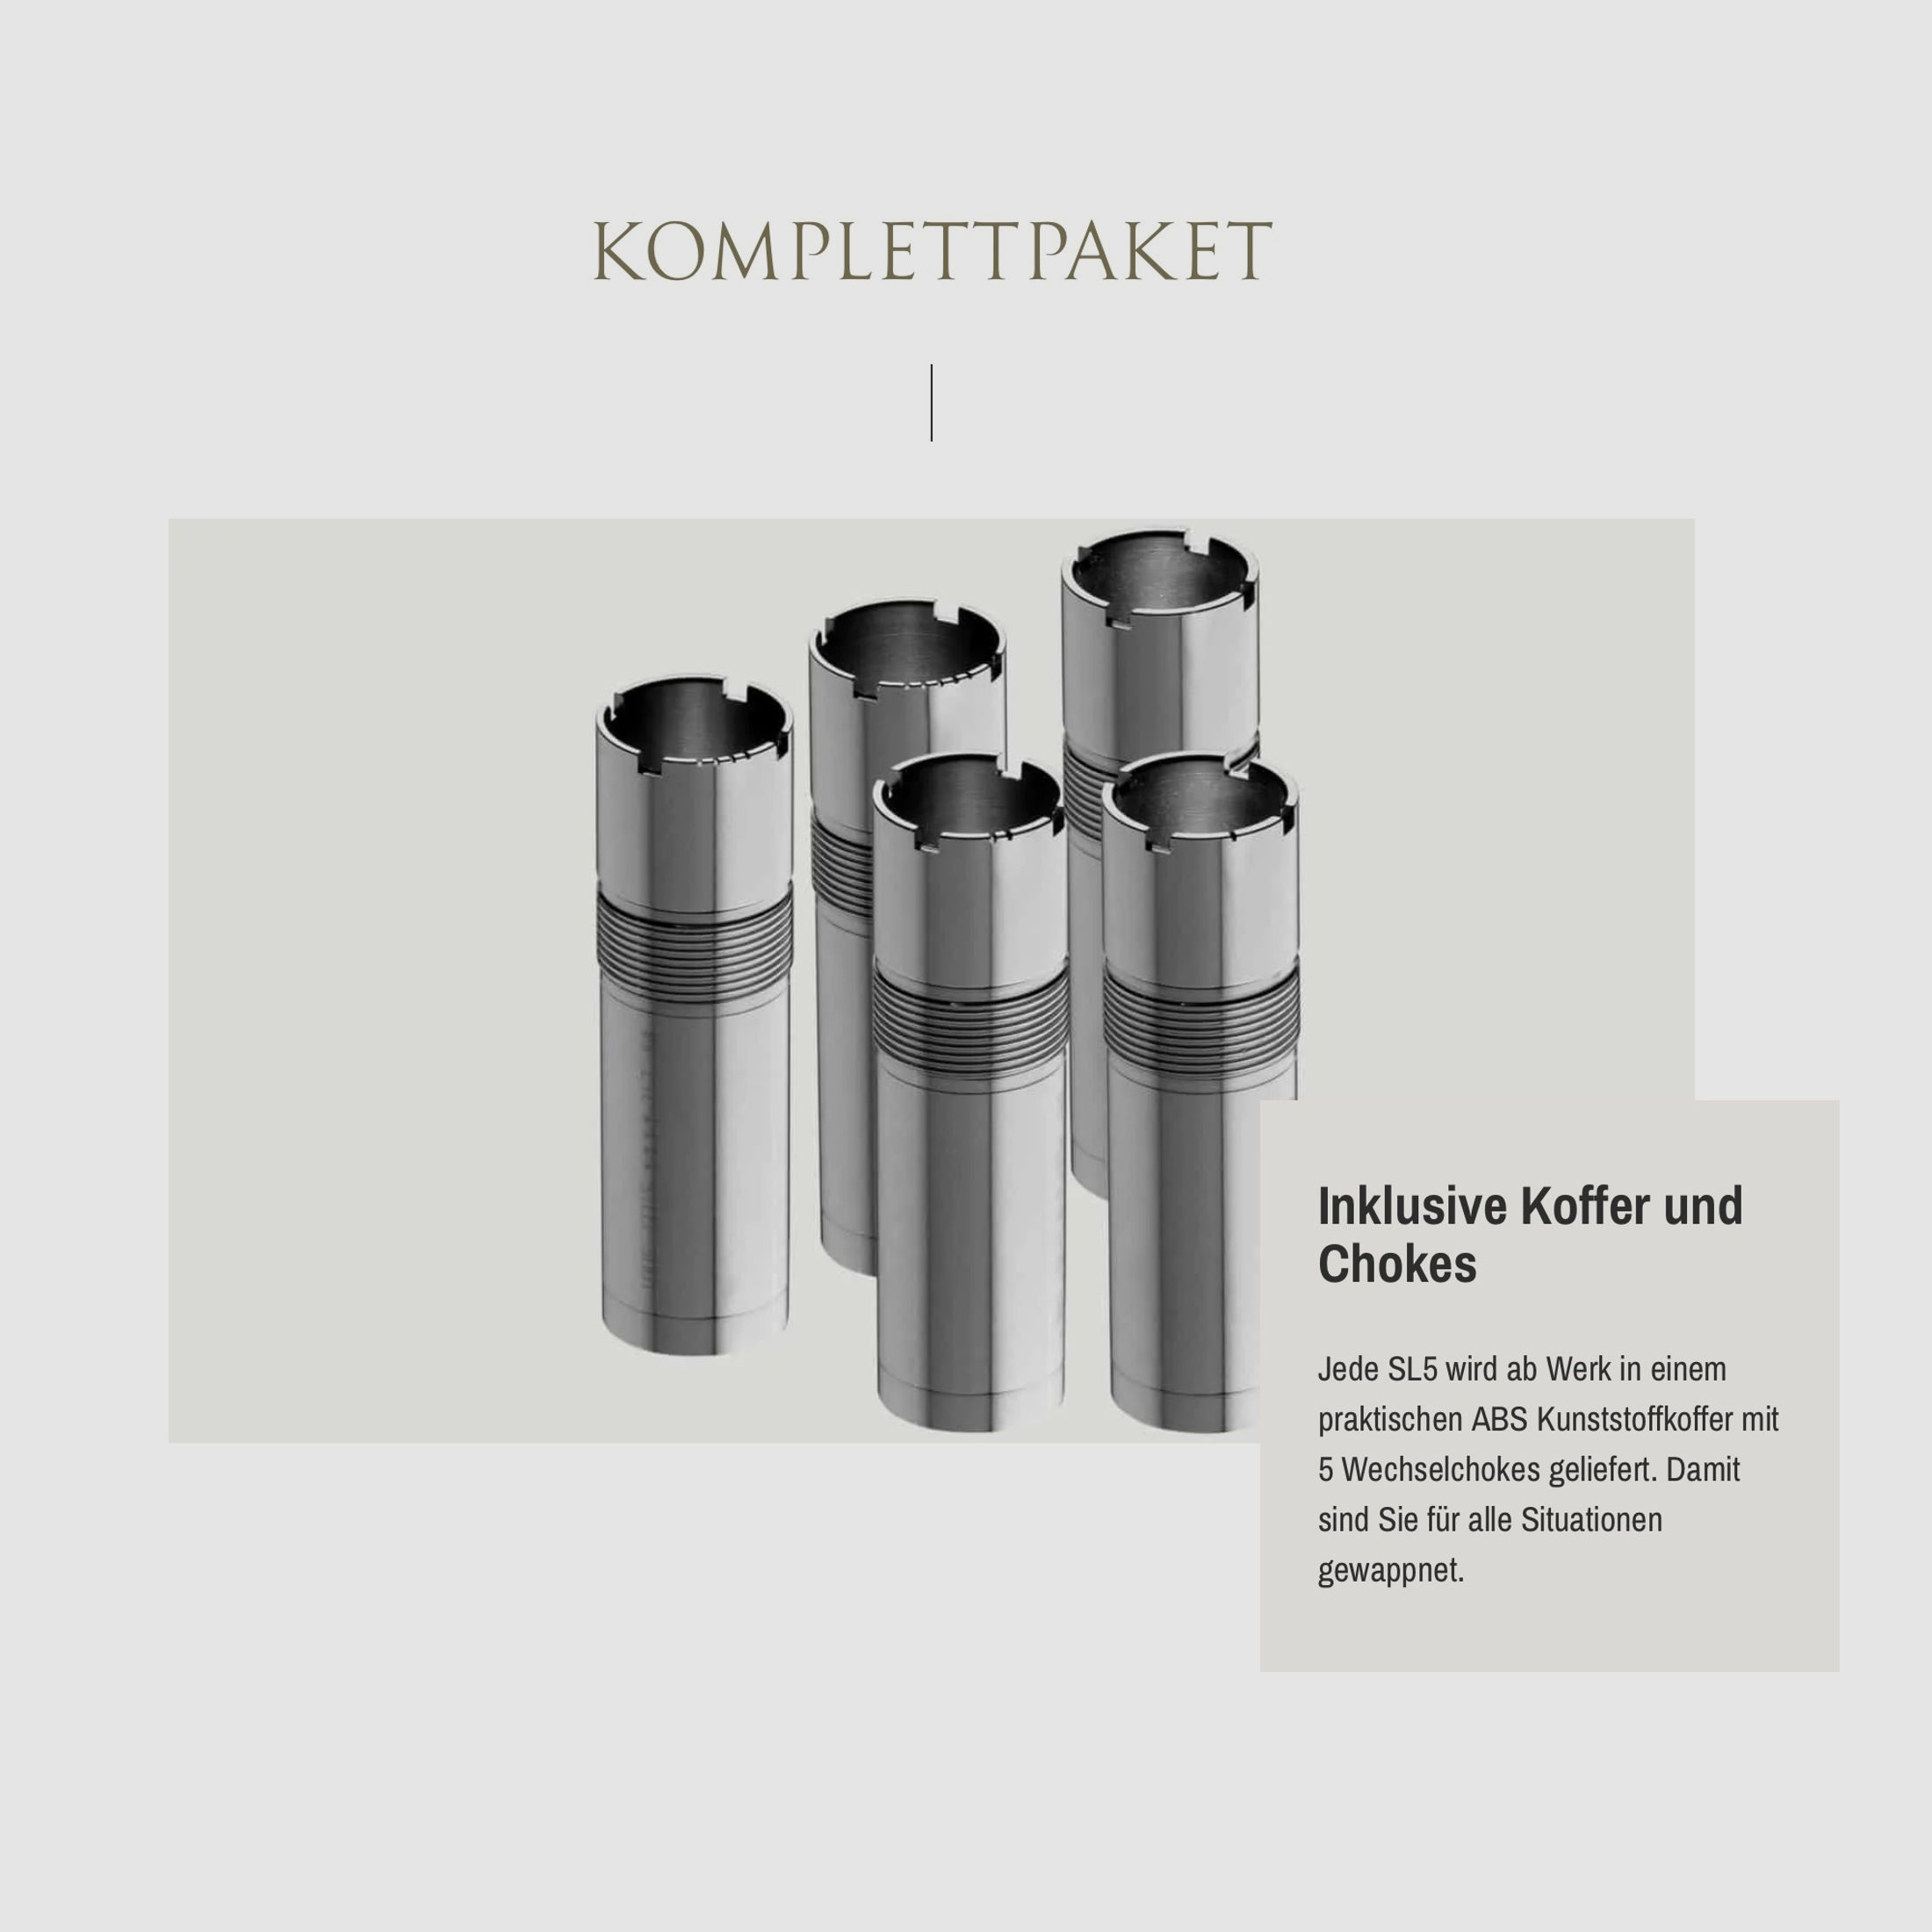 SAUER Selbstladeflinte SL5 Select Kaliber 12/76 70cm Lauflänge Wechselchokes Angebotspaket